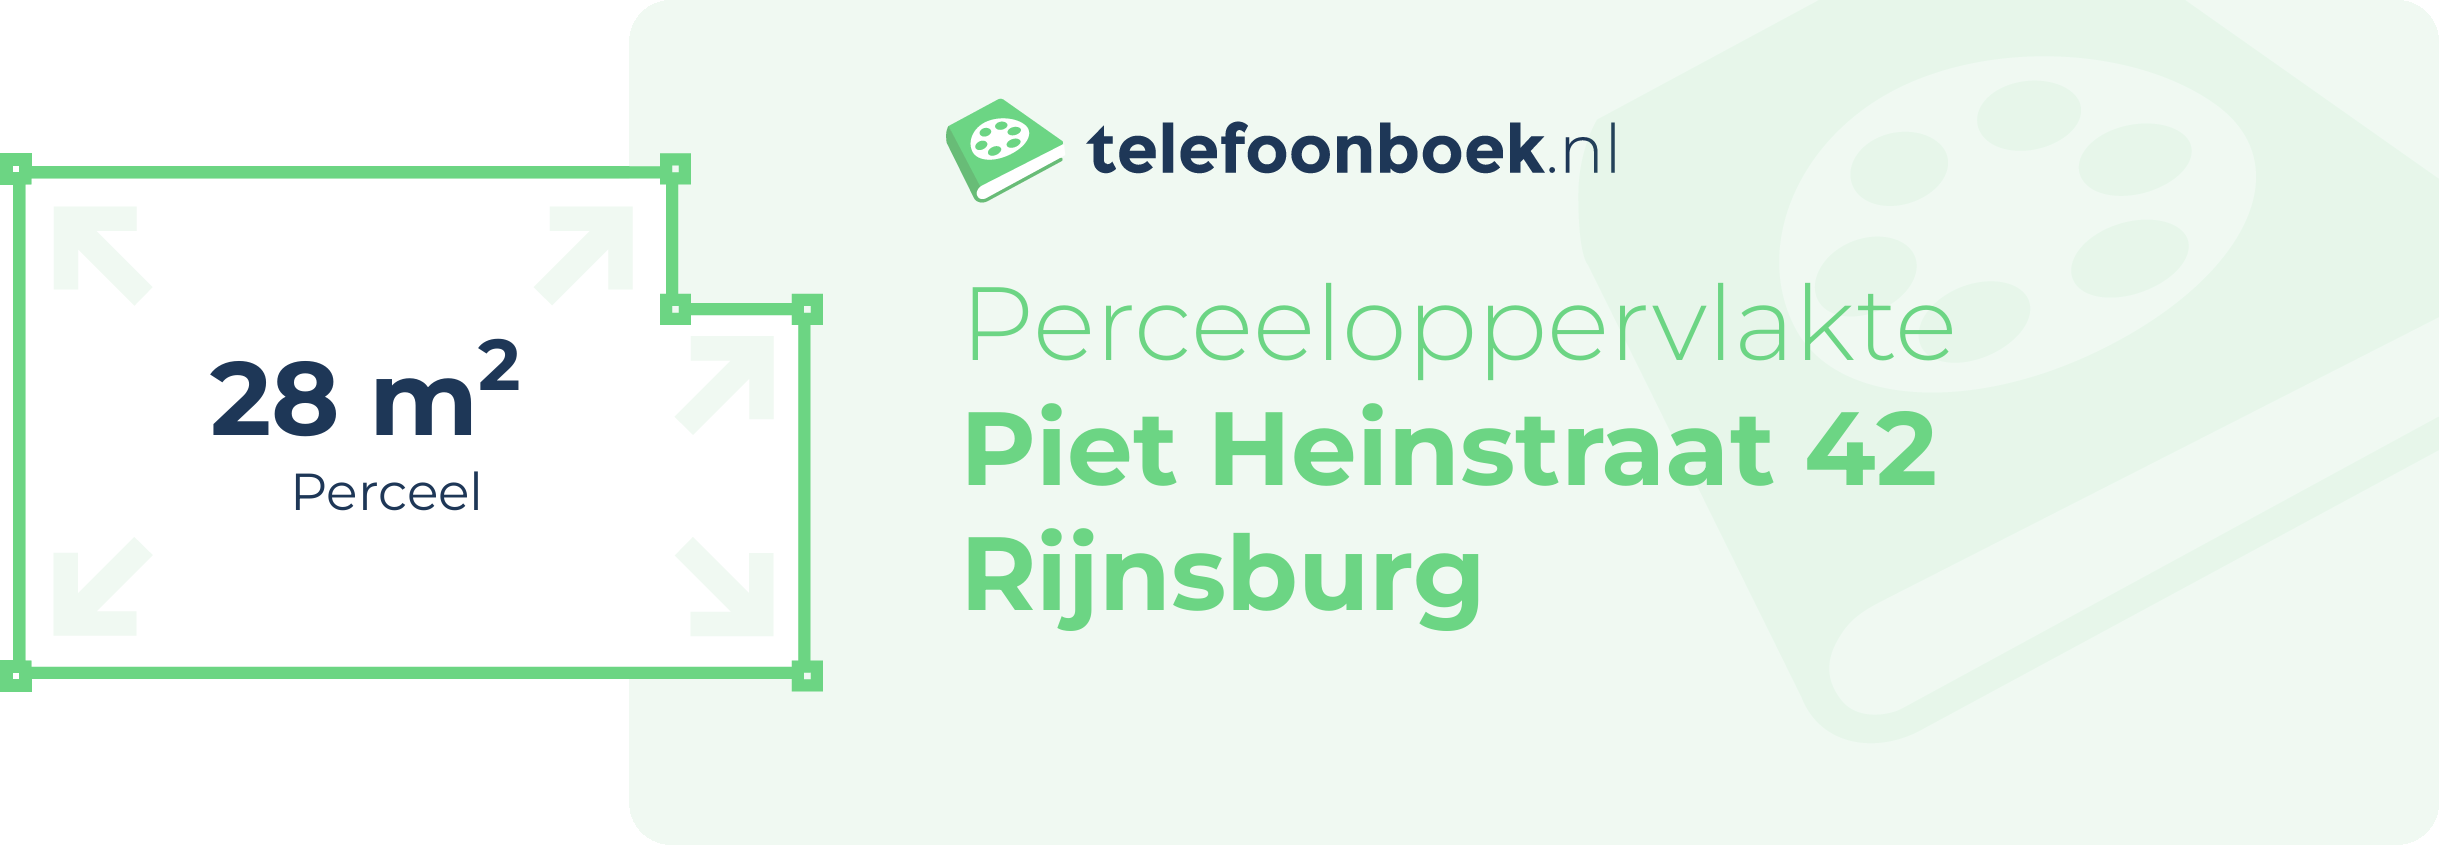 Perceeloppervlakte Piet Heinstraat 42 Rijnsburg